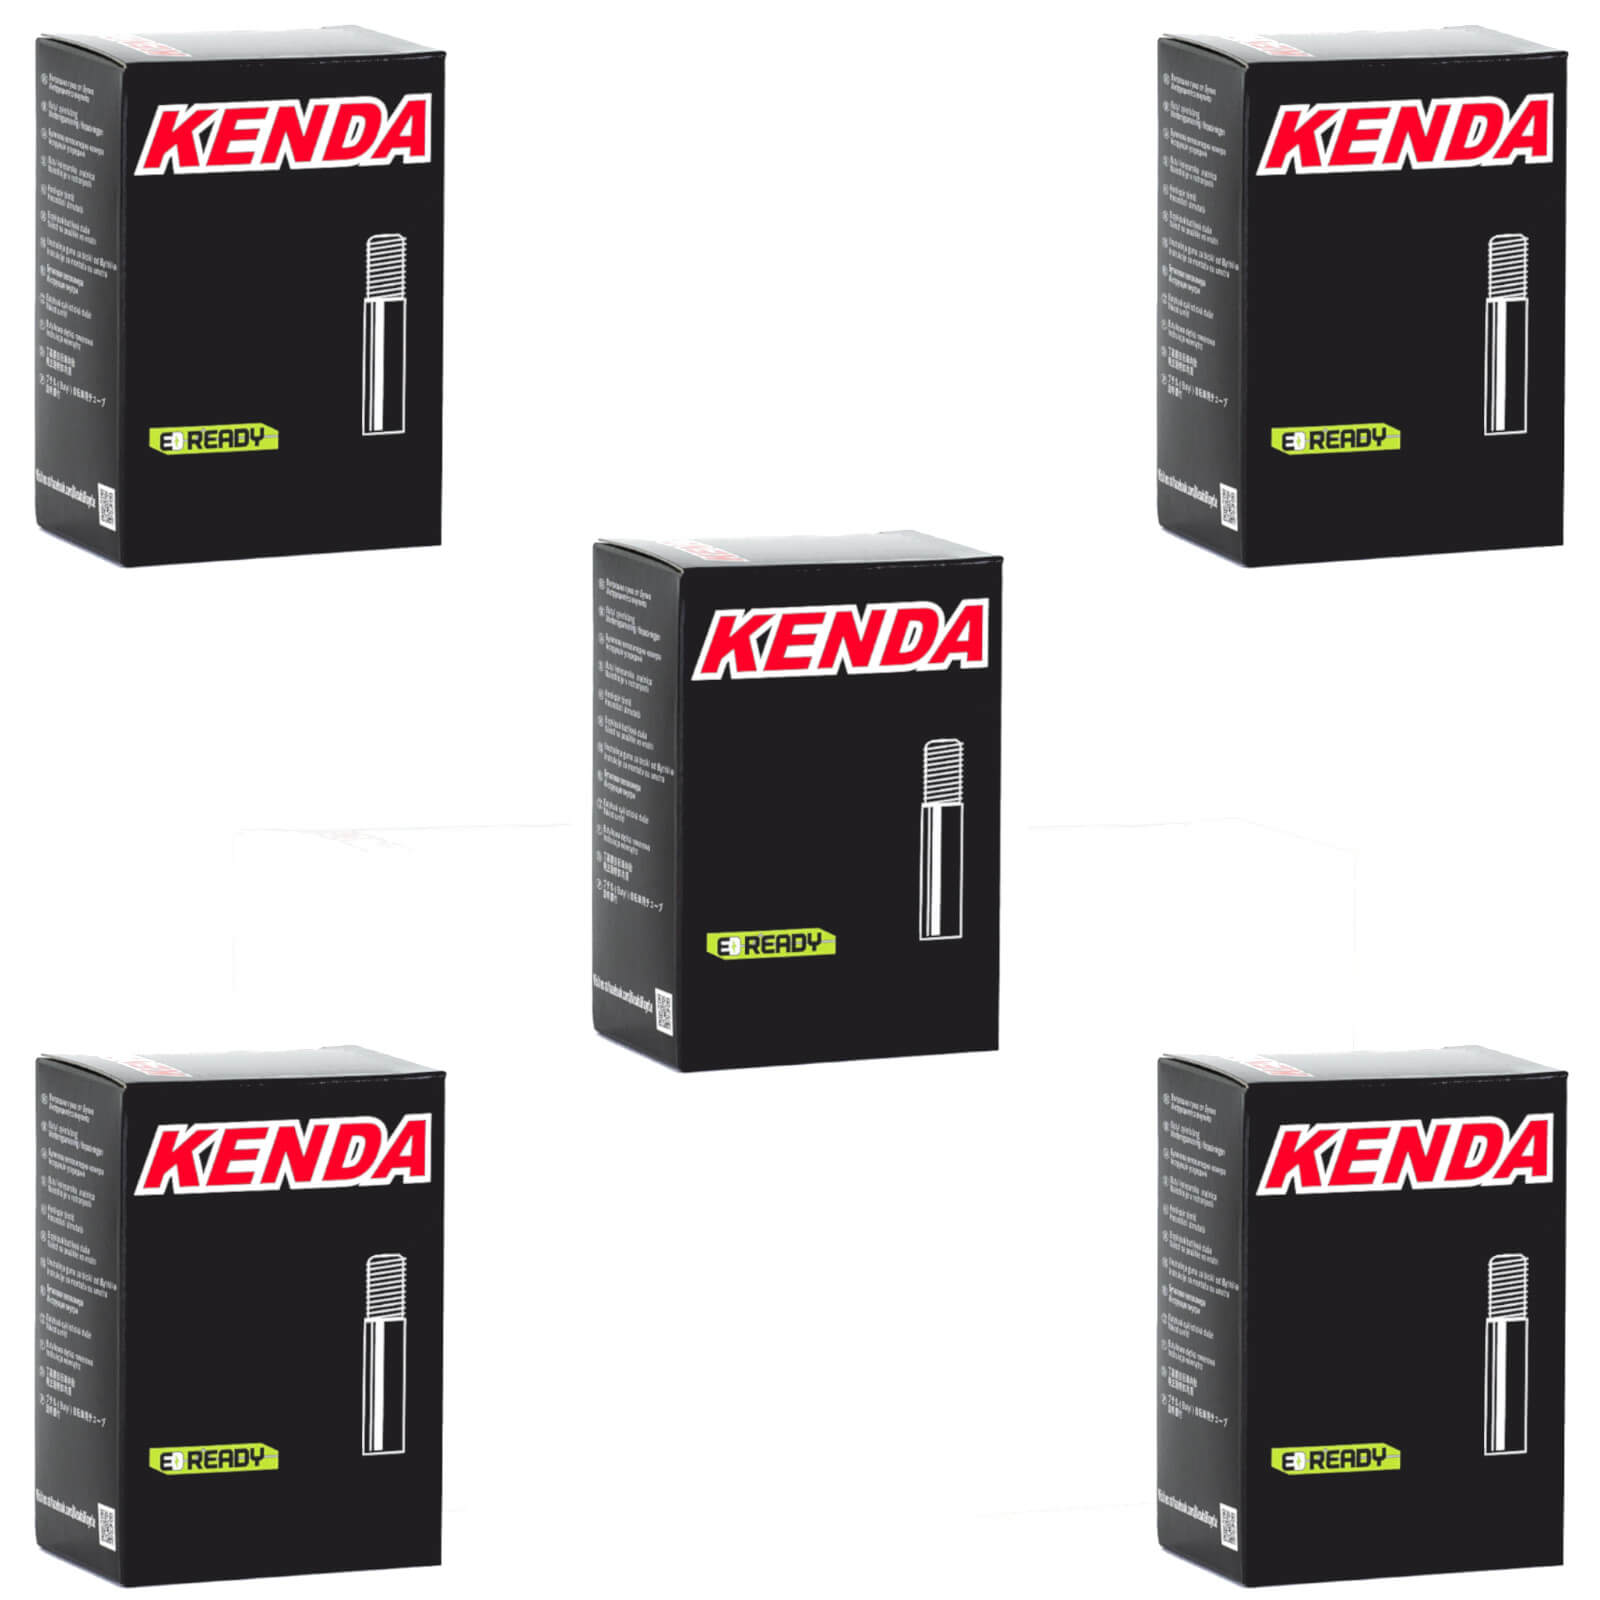 Kenda 20x2.8-3.0" 20 Inch Schrader Valve Bike Inner Tube Pack of 5